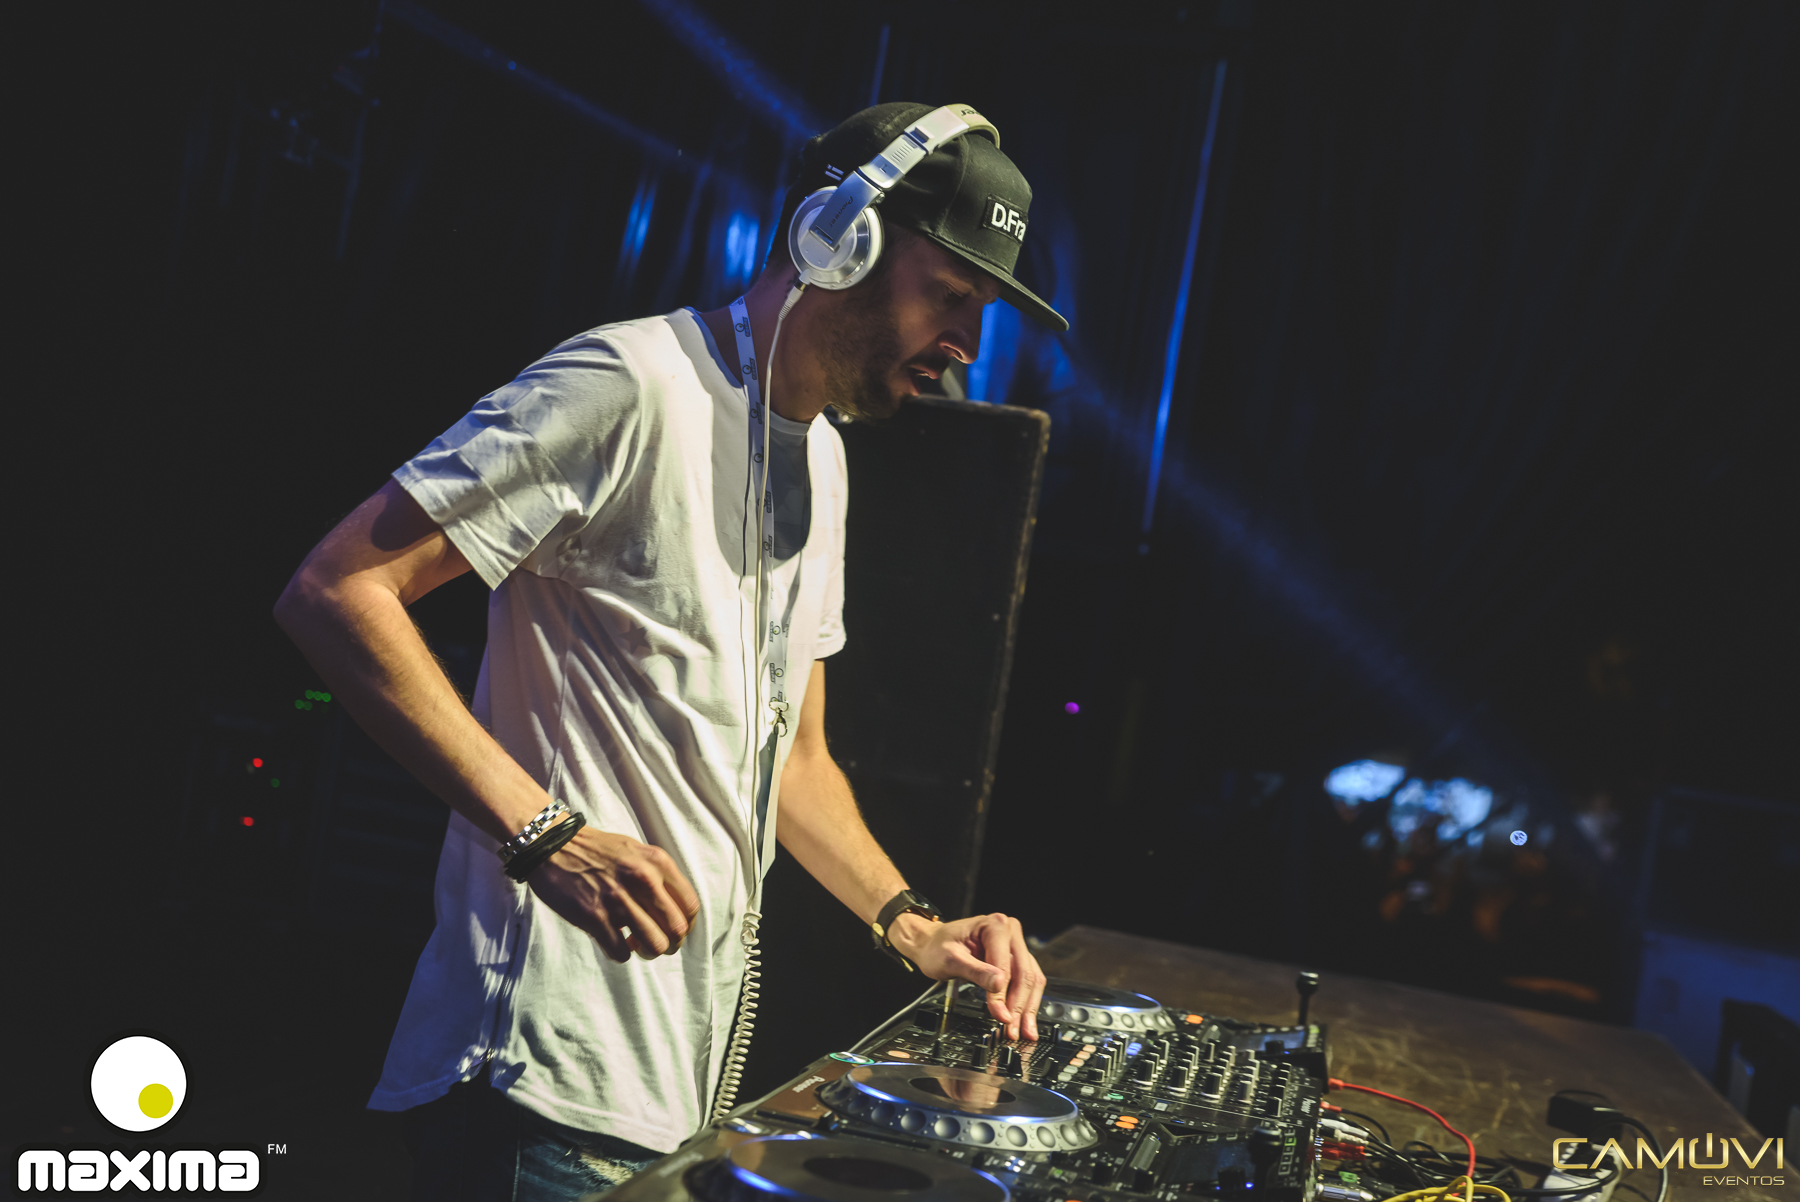 Los mejores y peores looks de los DJs en 2017